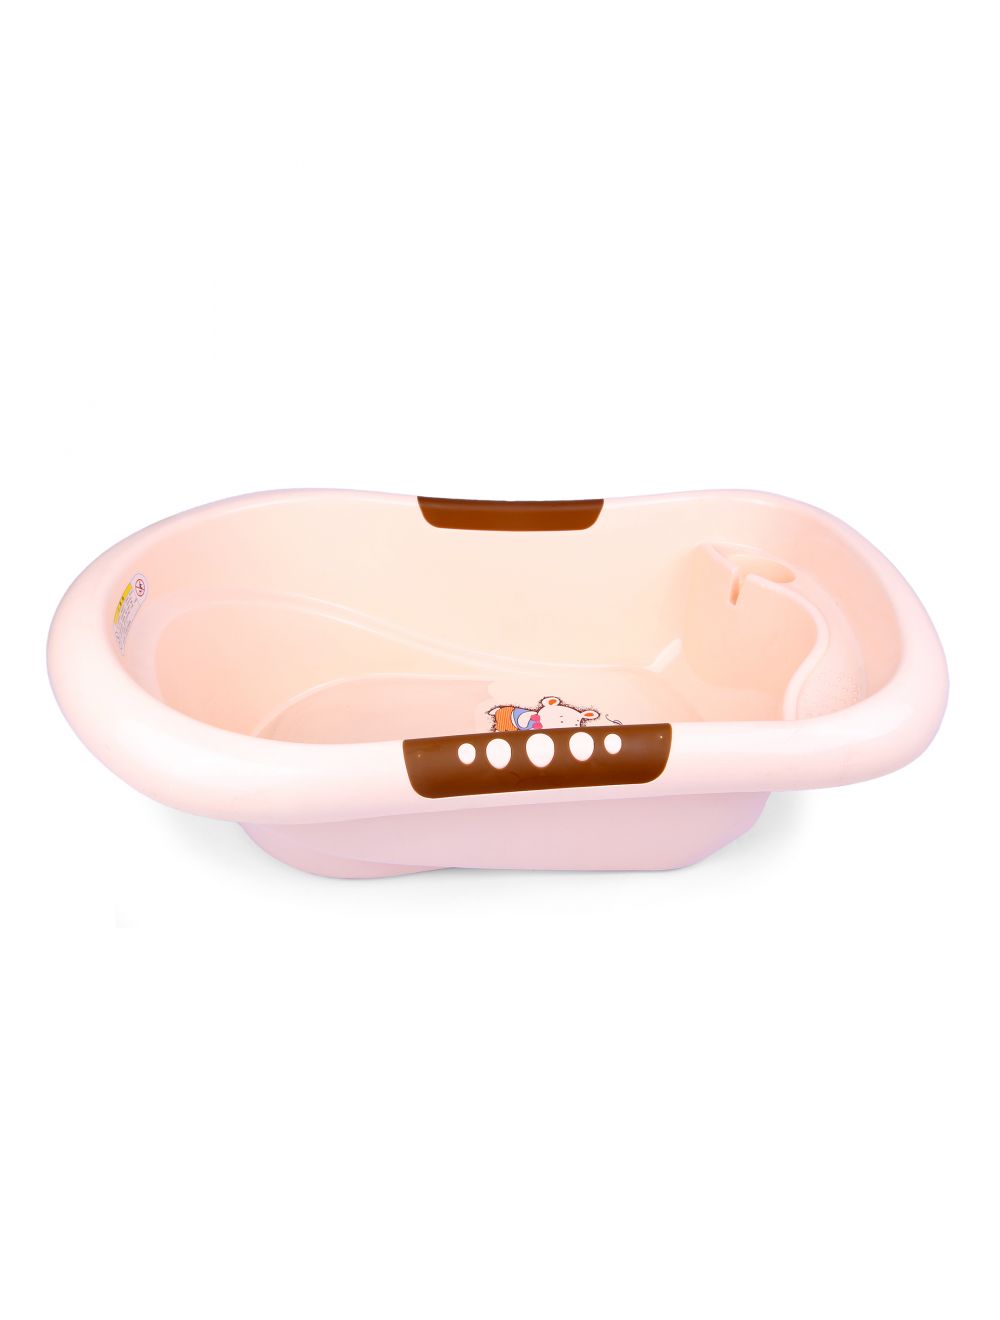 Joymaker Baby Bath Tub Puppy Brown